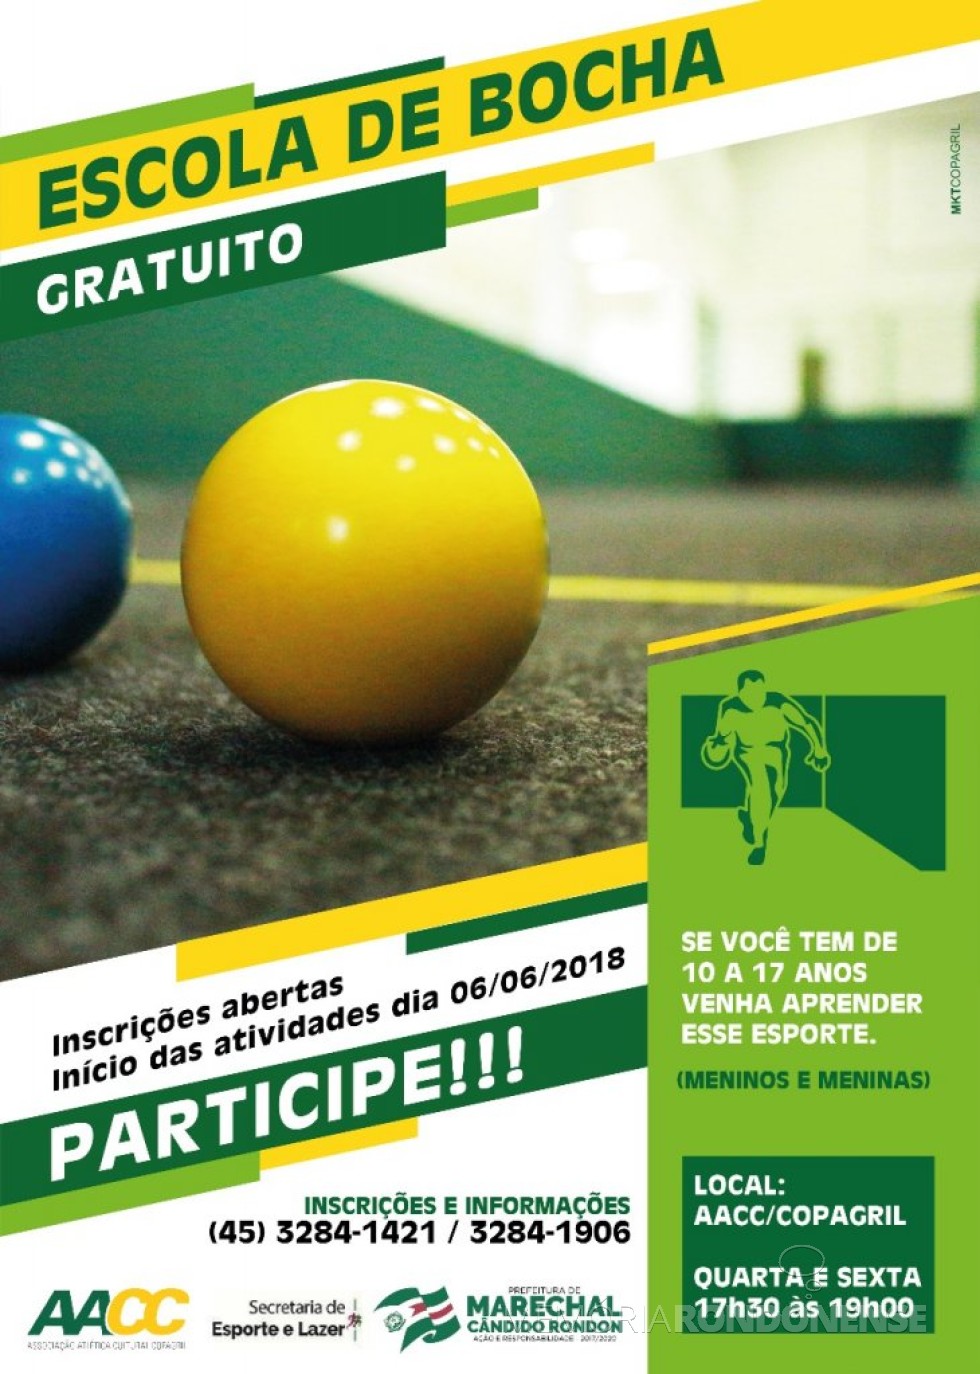 || Cartaz-convite para a Escola de Bocha, organizado em Marechal Cândido Rondon. 
Imagem: Imprensa PM-MCR - FOTO 12  - 